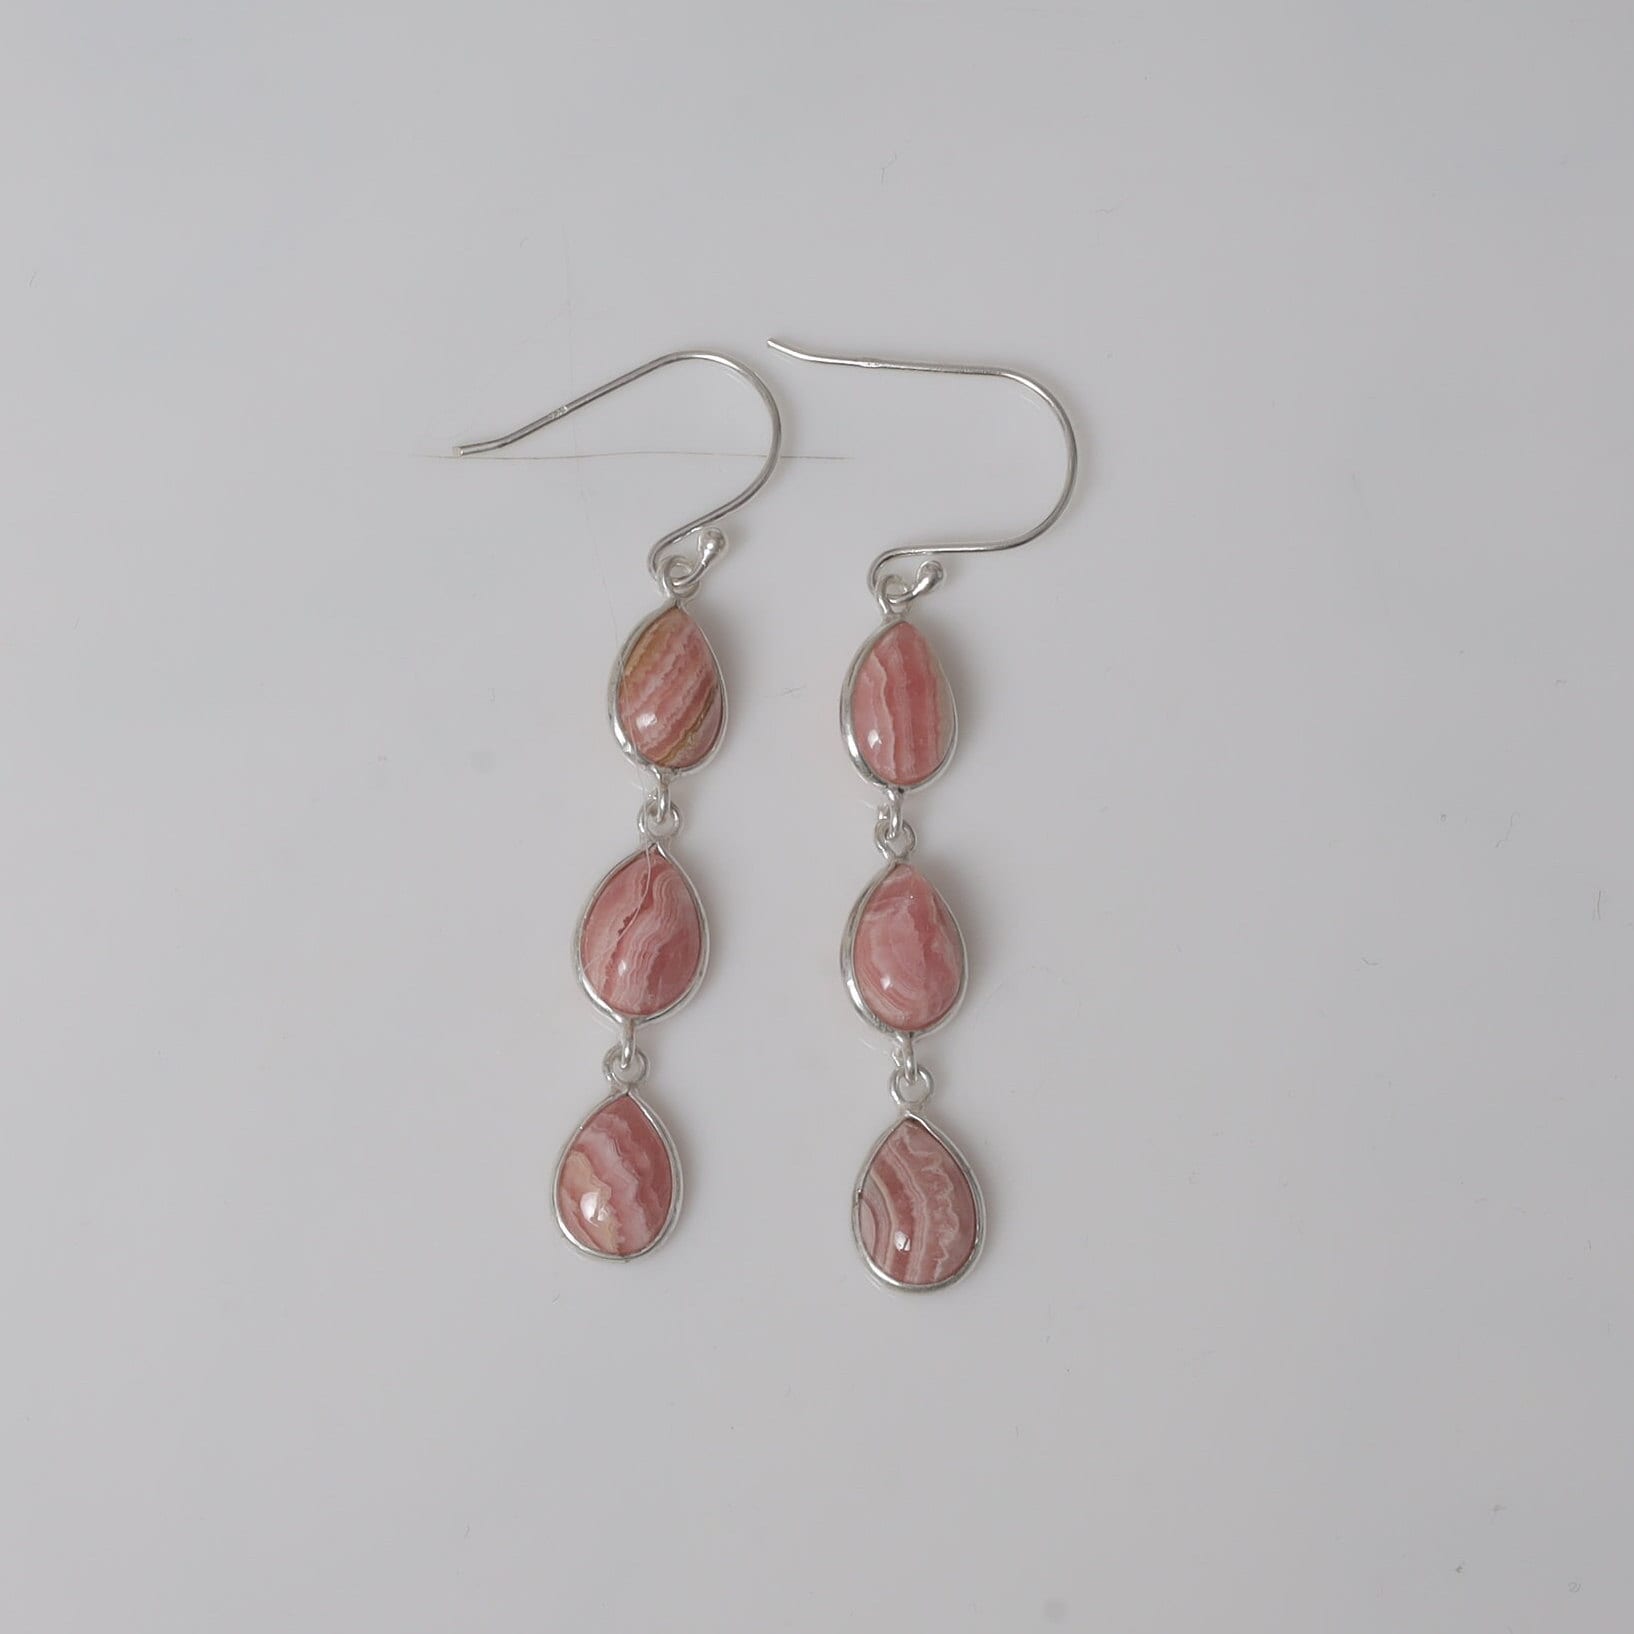 Rhodochrosite Earrings, 925 Sterling Silver Earrings, Pink Gemstone Earrings, Dangle Drop Earrings, Women Silver Jewelry, Vintage Earrings